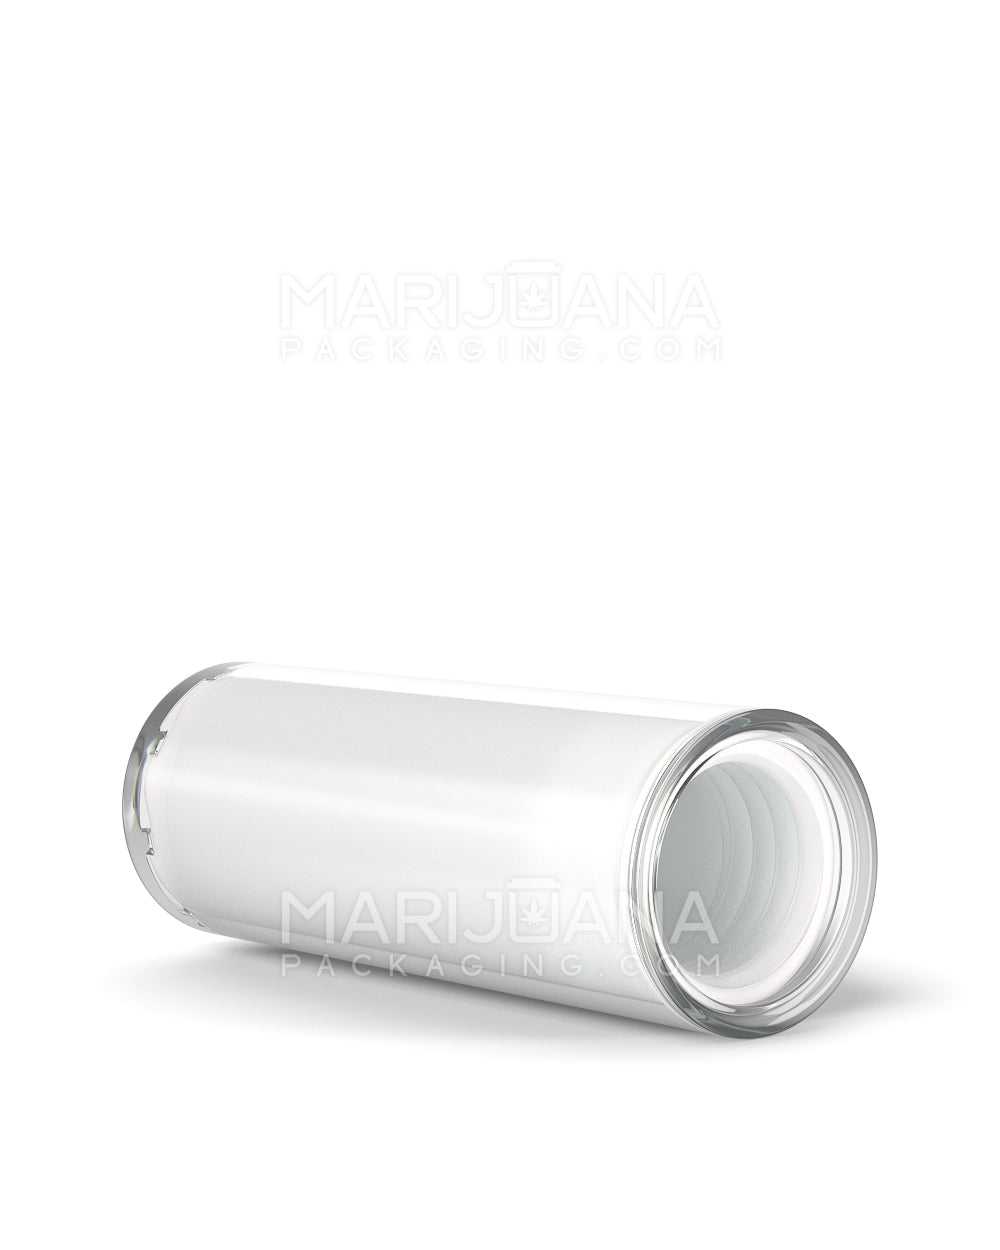 Child Resistant | Vape Cartridge Tube w/ White Plastic Insert | 80mm - White - 100 Count - 13